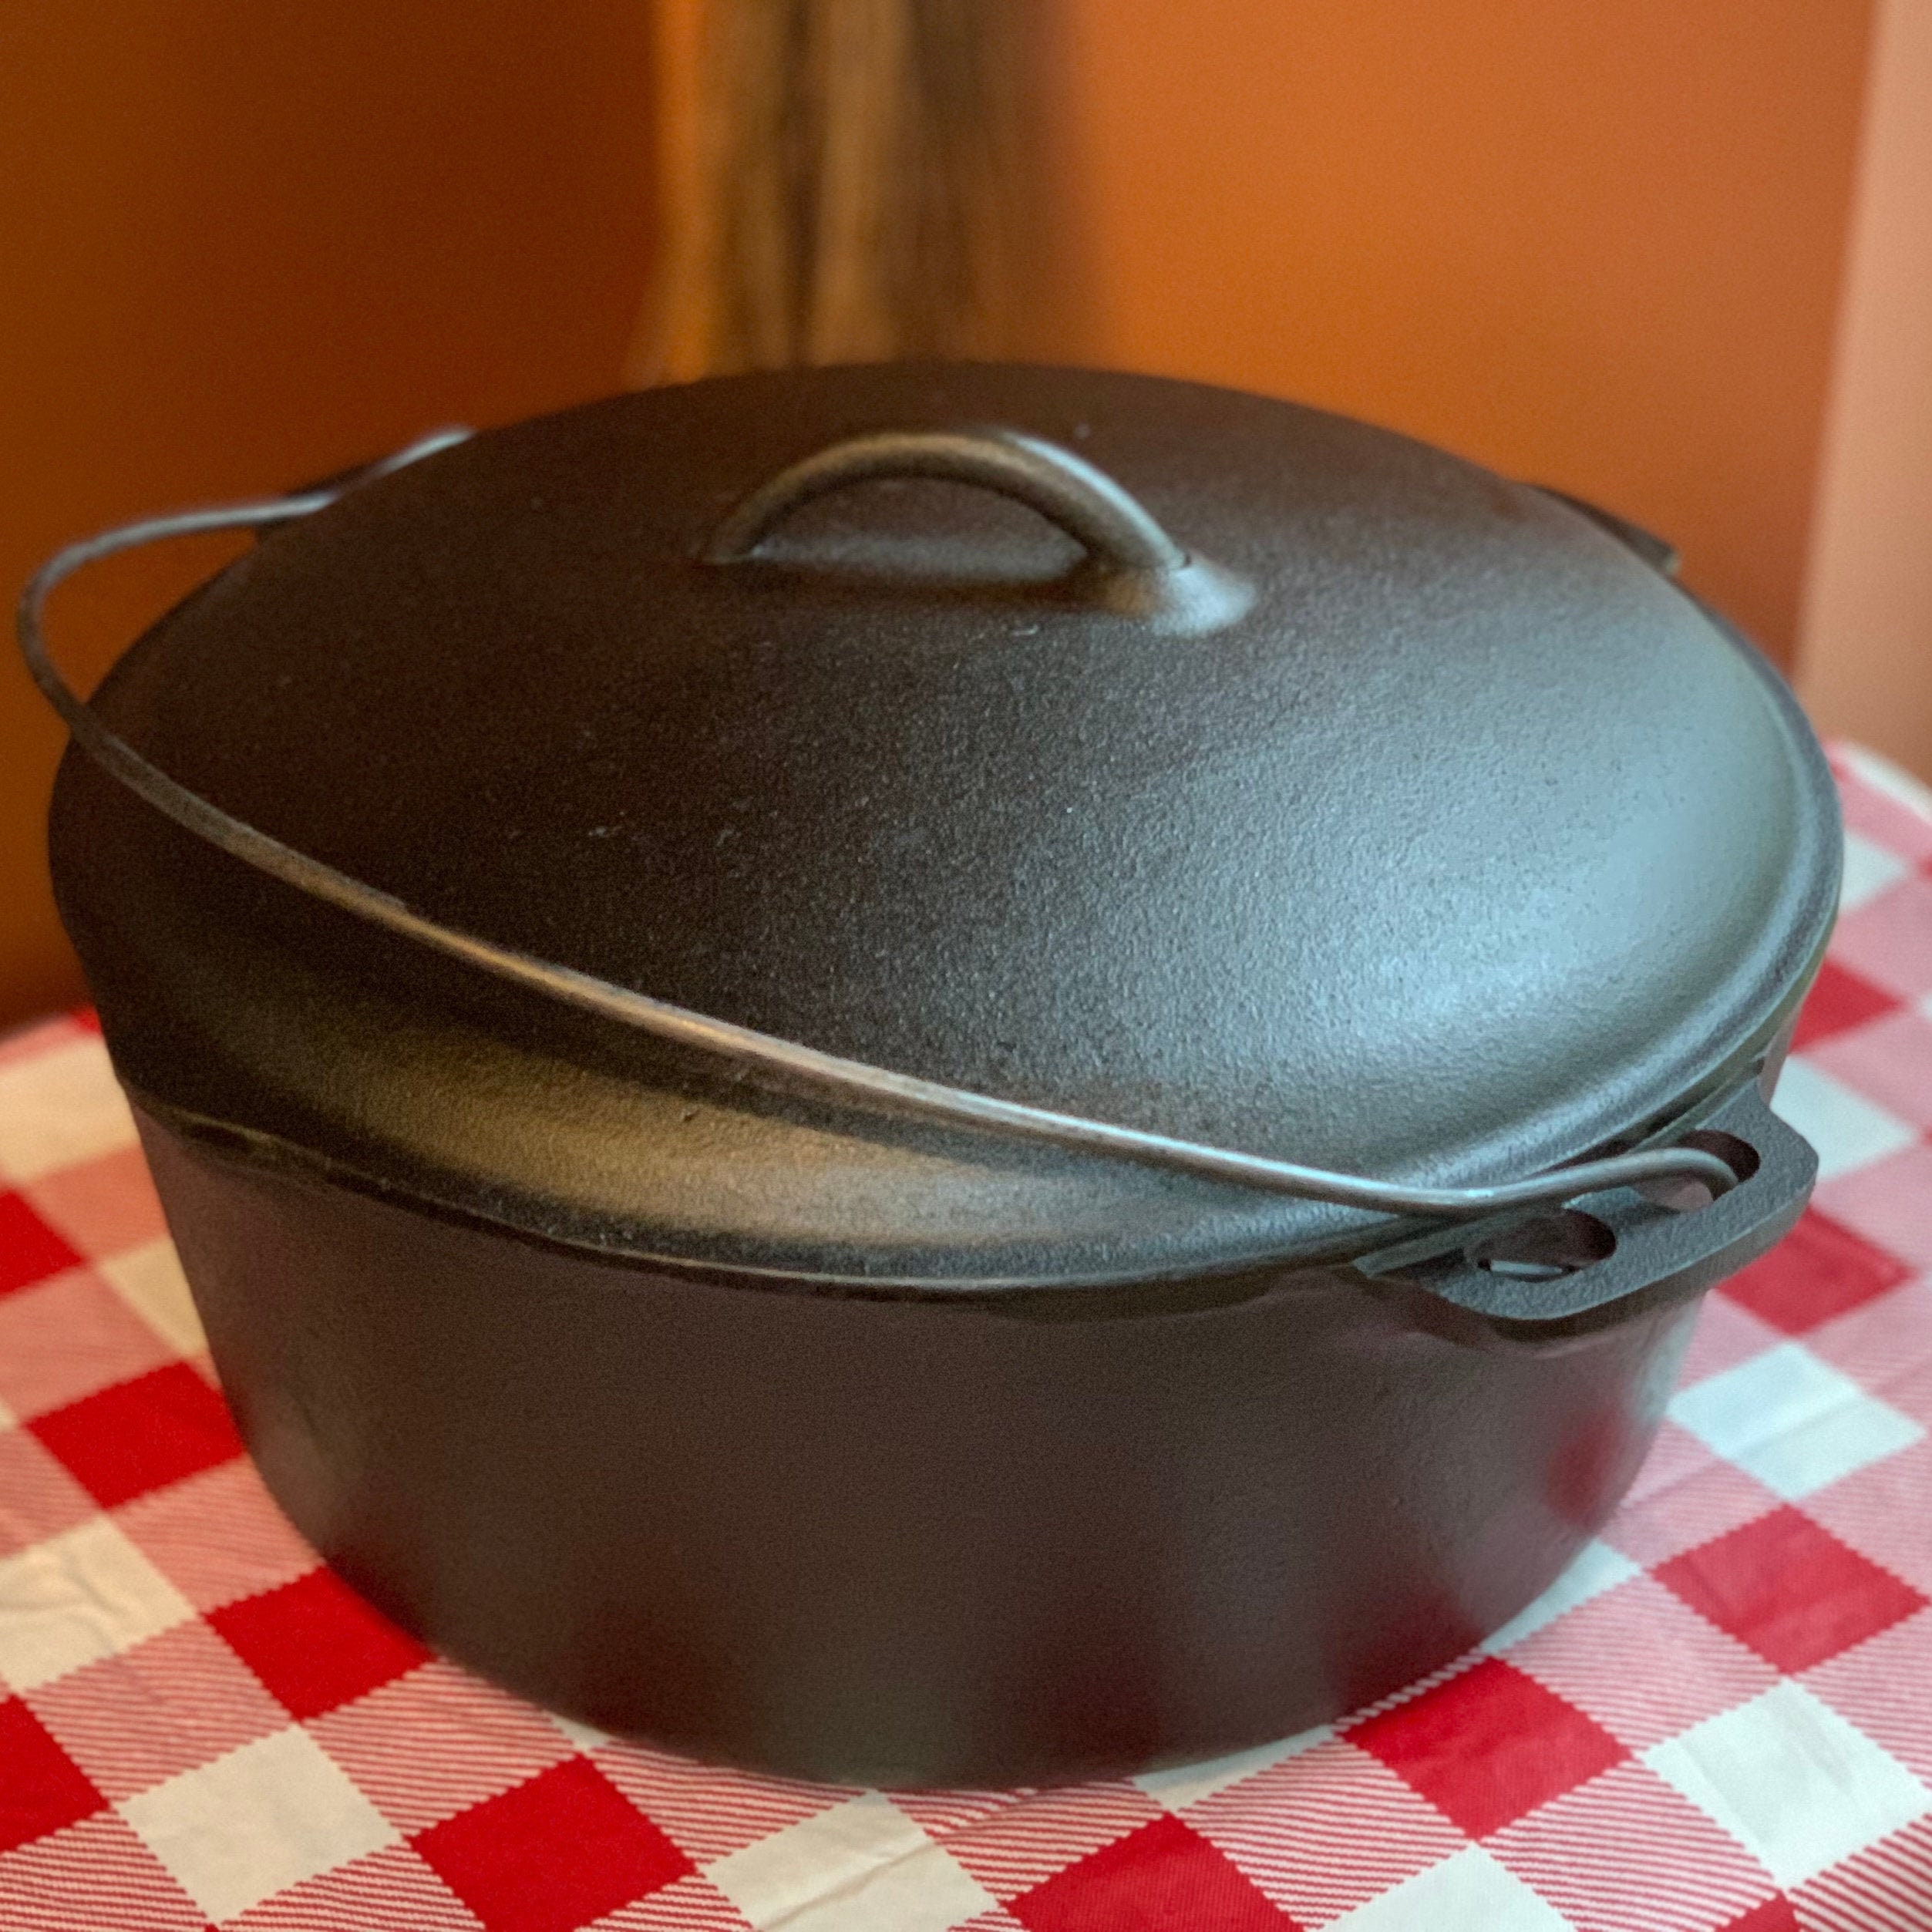 Vintage Lodge Cast Iron Dutch Oven Pot w/Lid #8 10 1/4 8 DOL USA